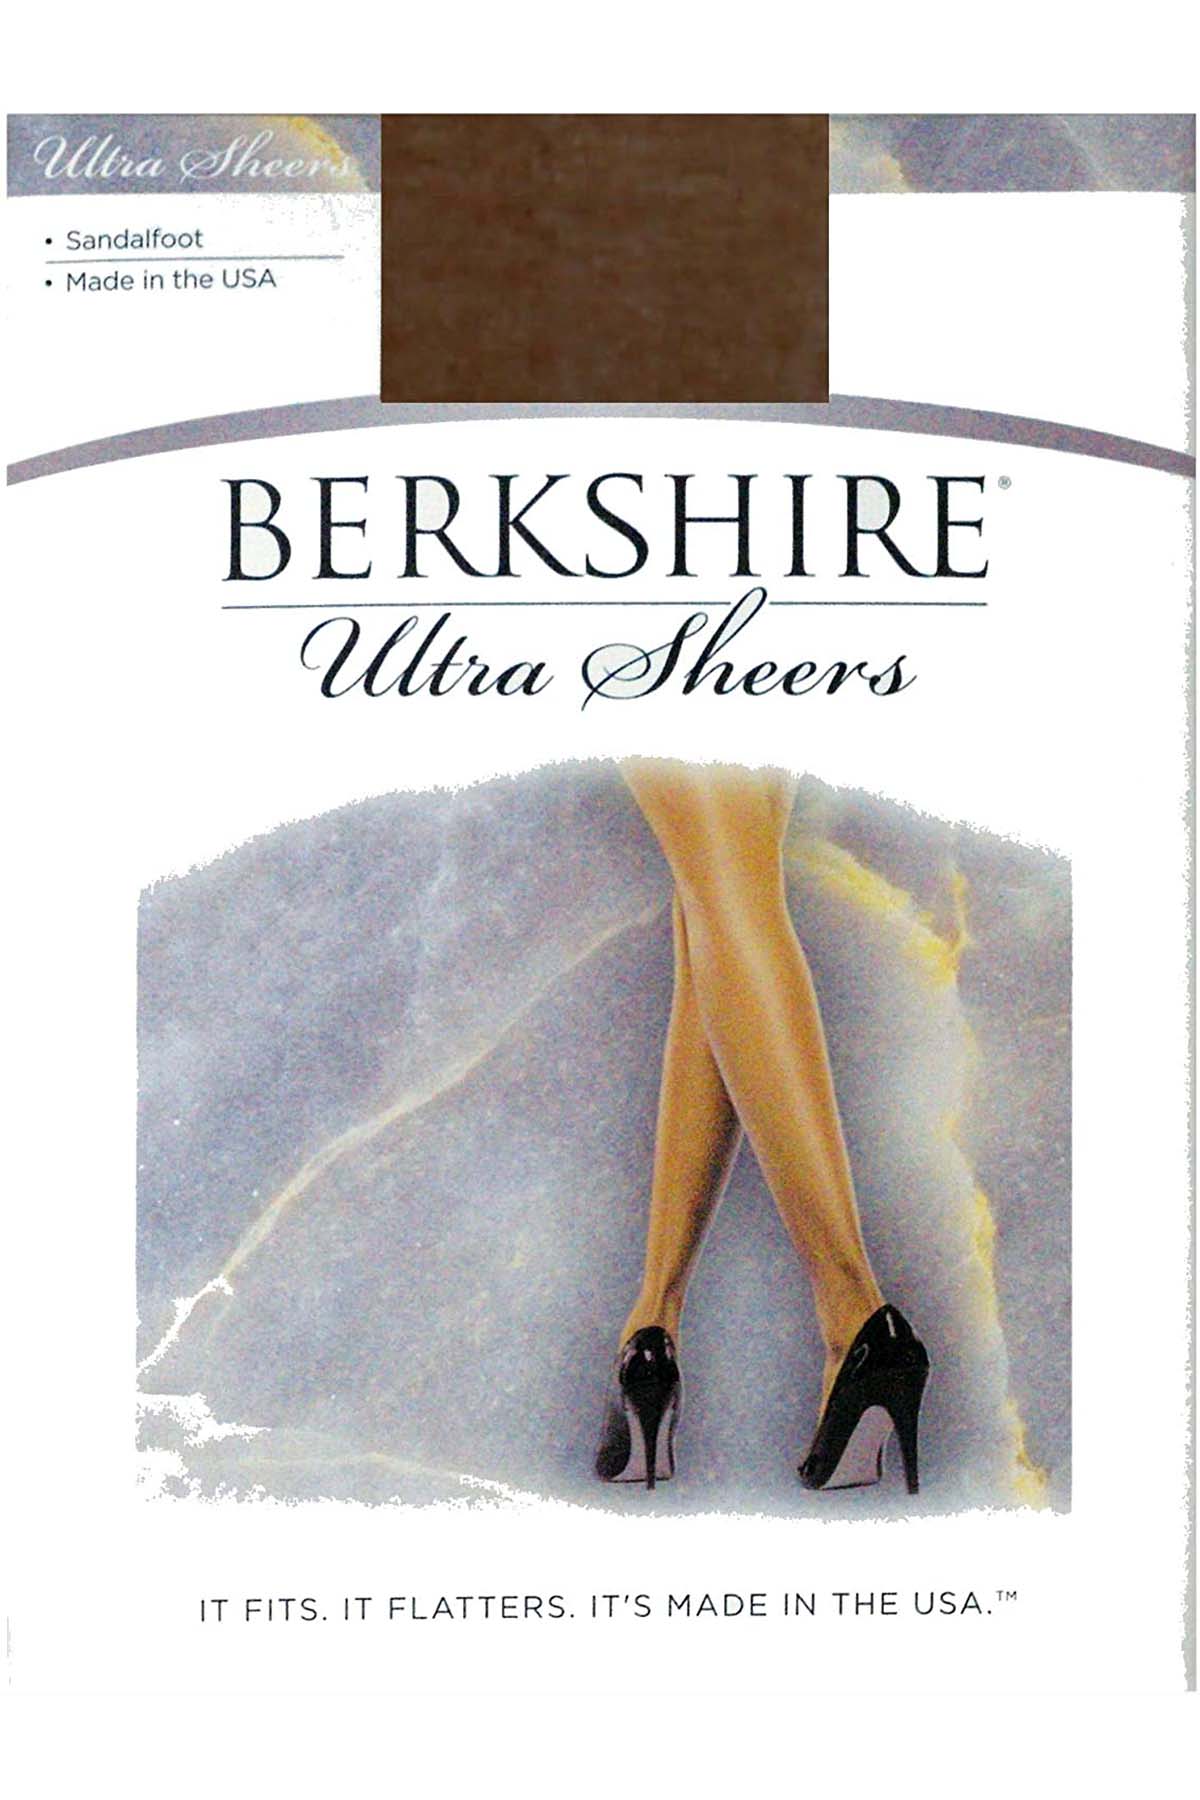 Berkshire Ultra Sheers Sandalfoot Pantyhose in Utopia – CheapUndies